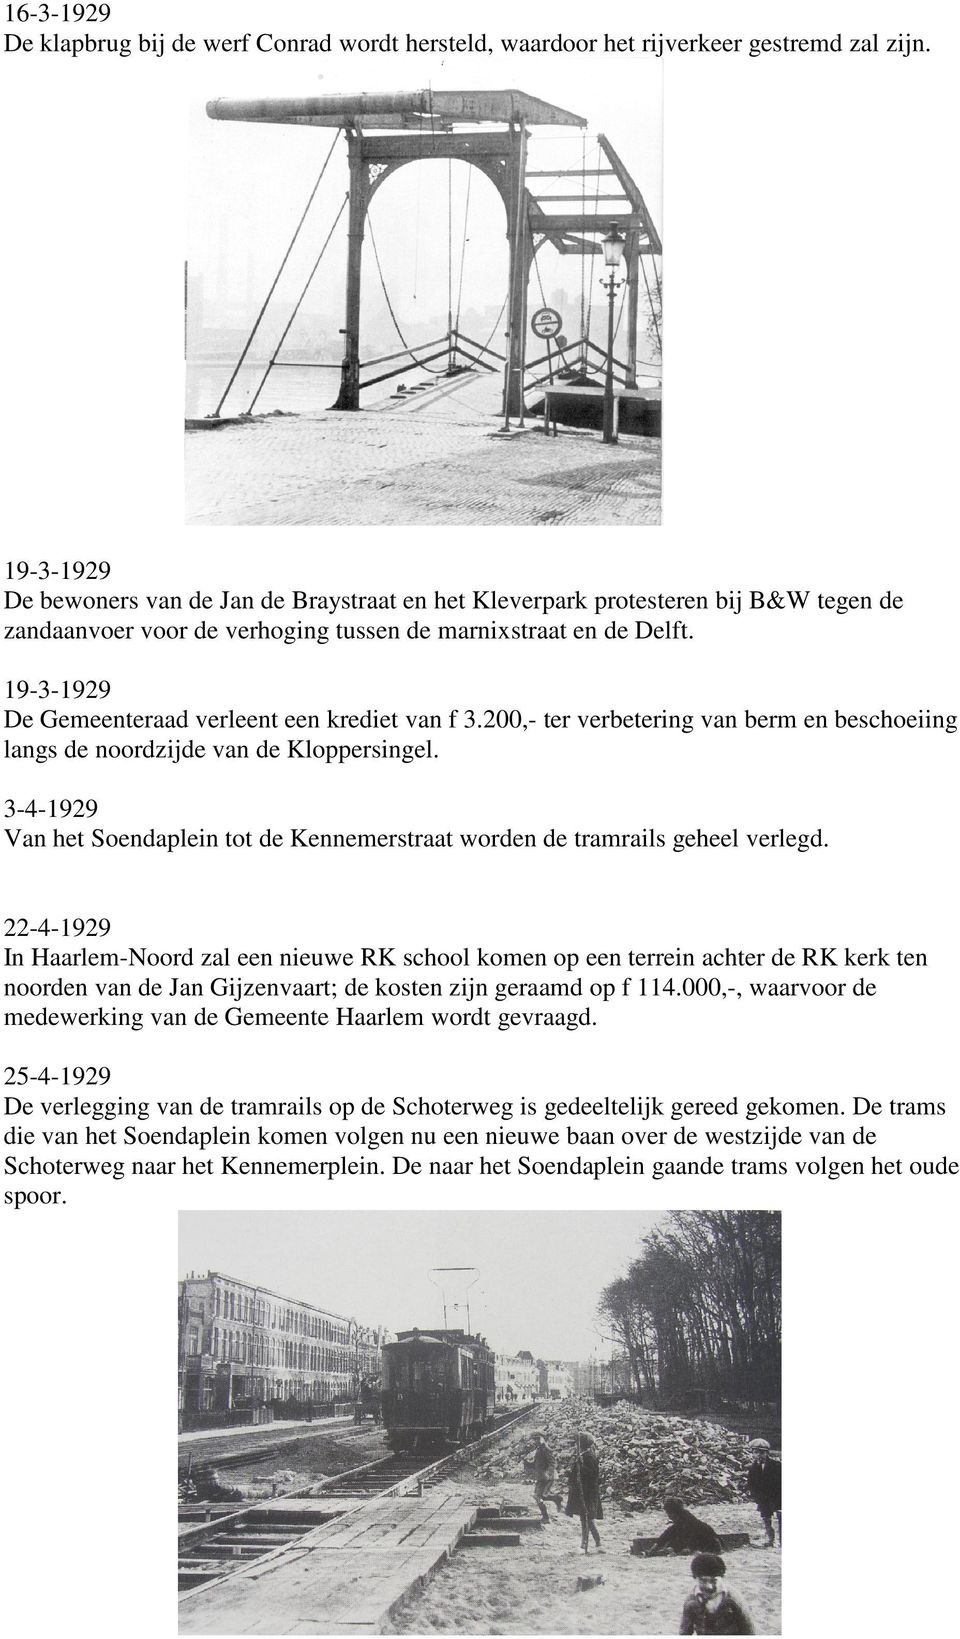 19-3-1929 De Gemeenteraad verleent een krediet van f 3.200,- ter verbetering van berm en beschoeiing langs de noordzijde van de Kloppersingel.